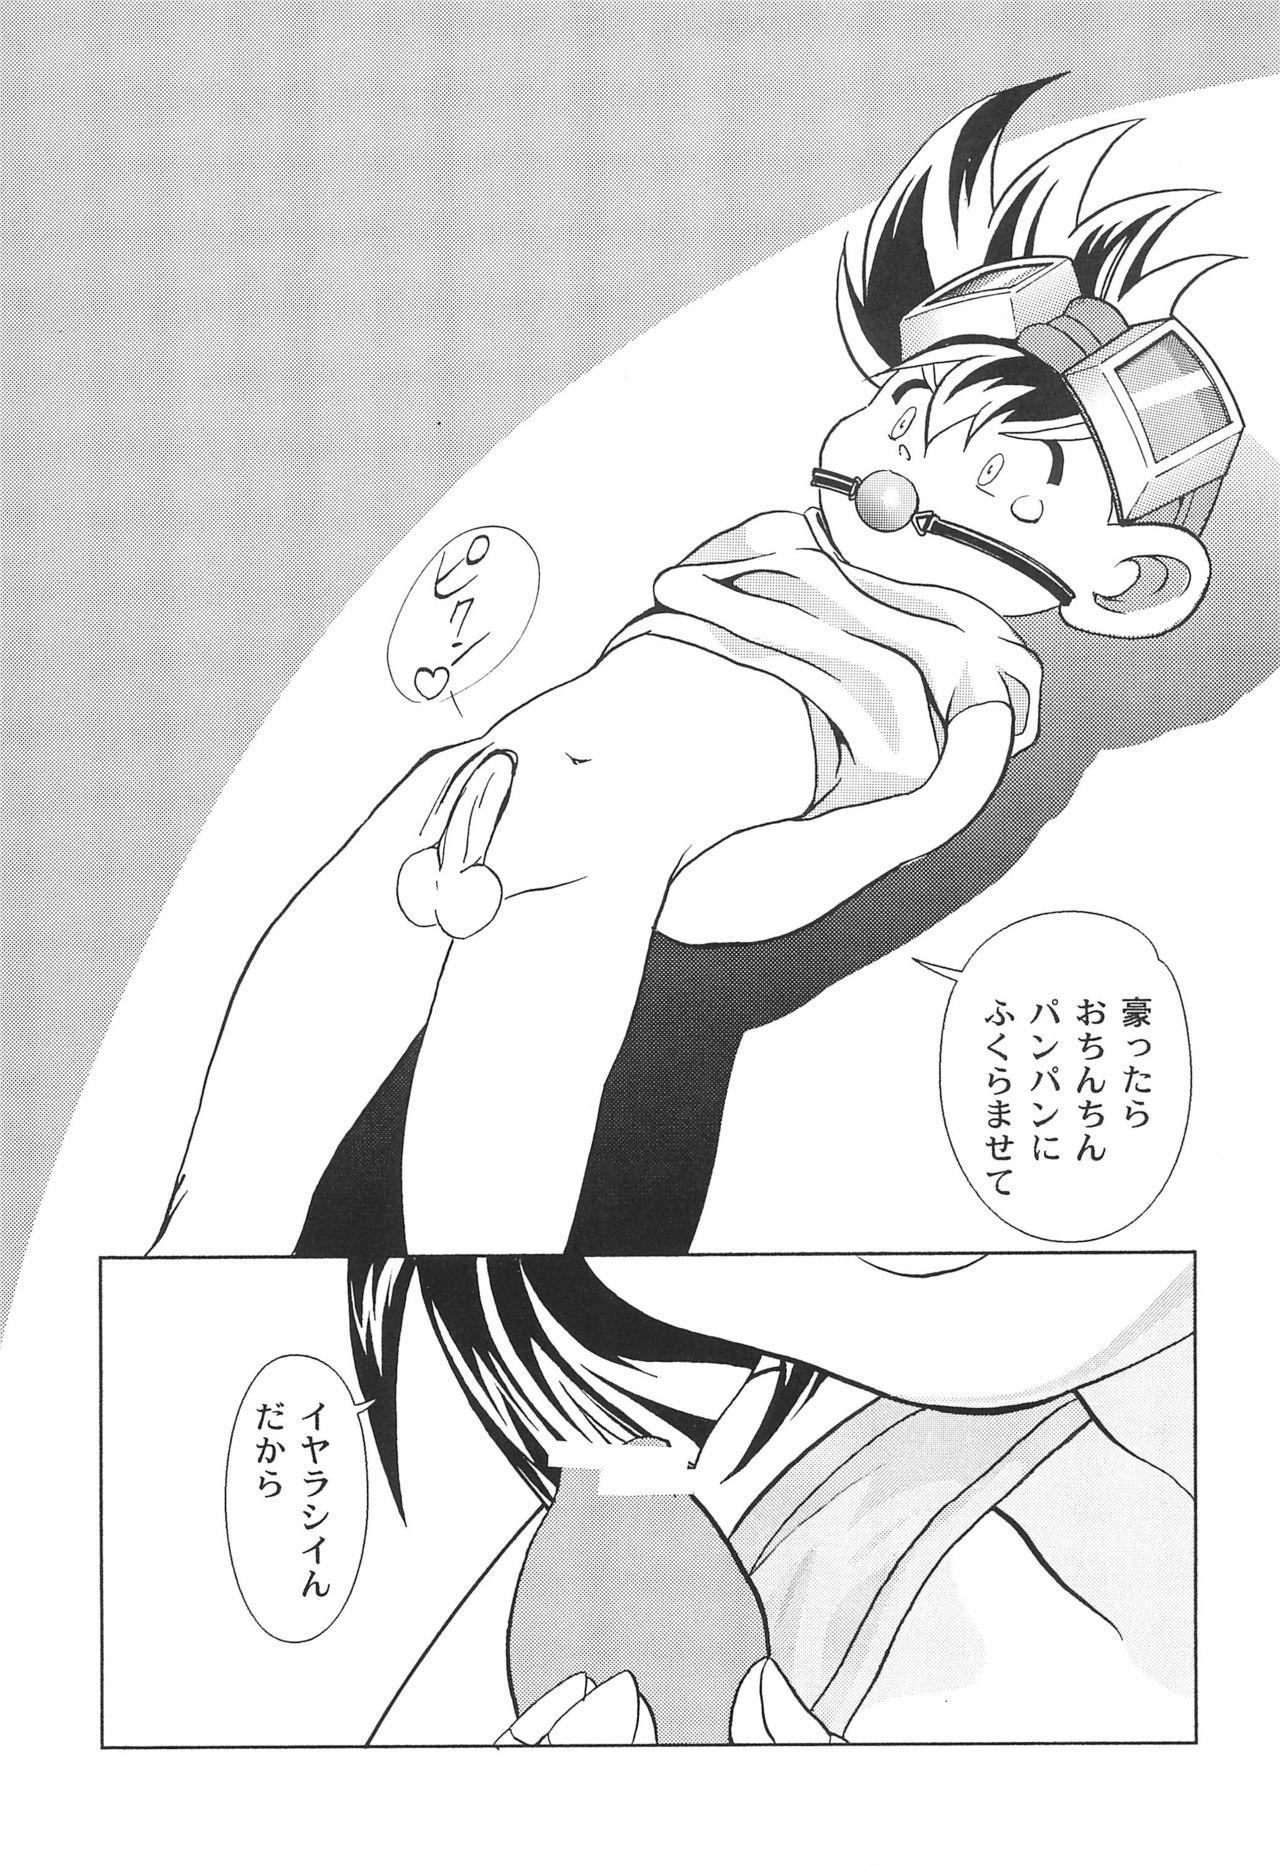 Dominate Gokuraku Tokkyuu AMINO - Bakusou kyoudai lets and go Boyfriend - Page 7